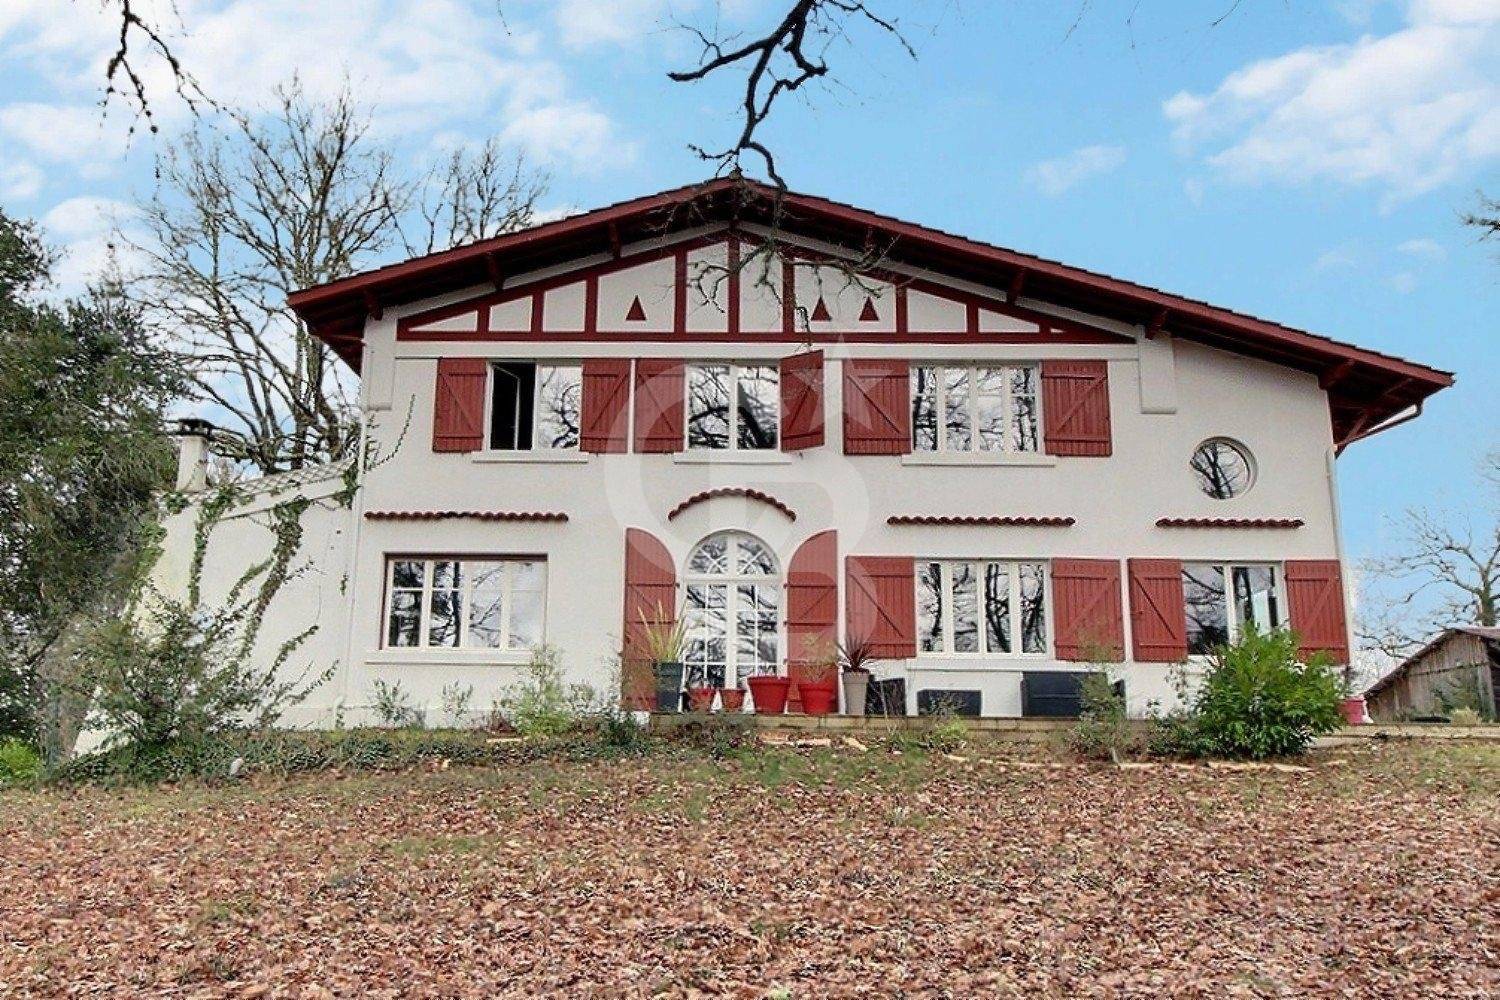 Charmante maison basco-landaise avec parc 1,9 hectares à vendre entre Bordeaux et Arcachon - SALLES